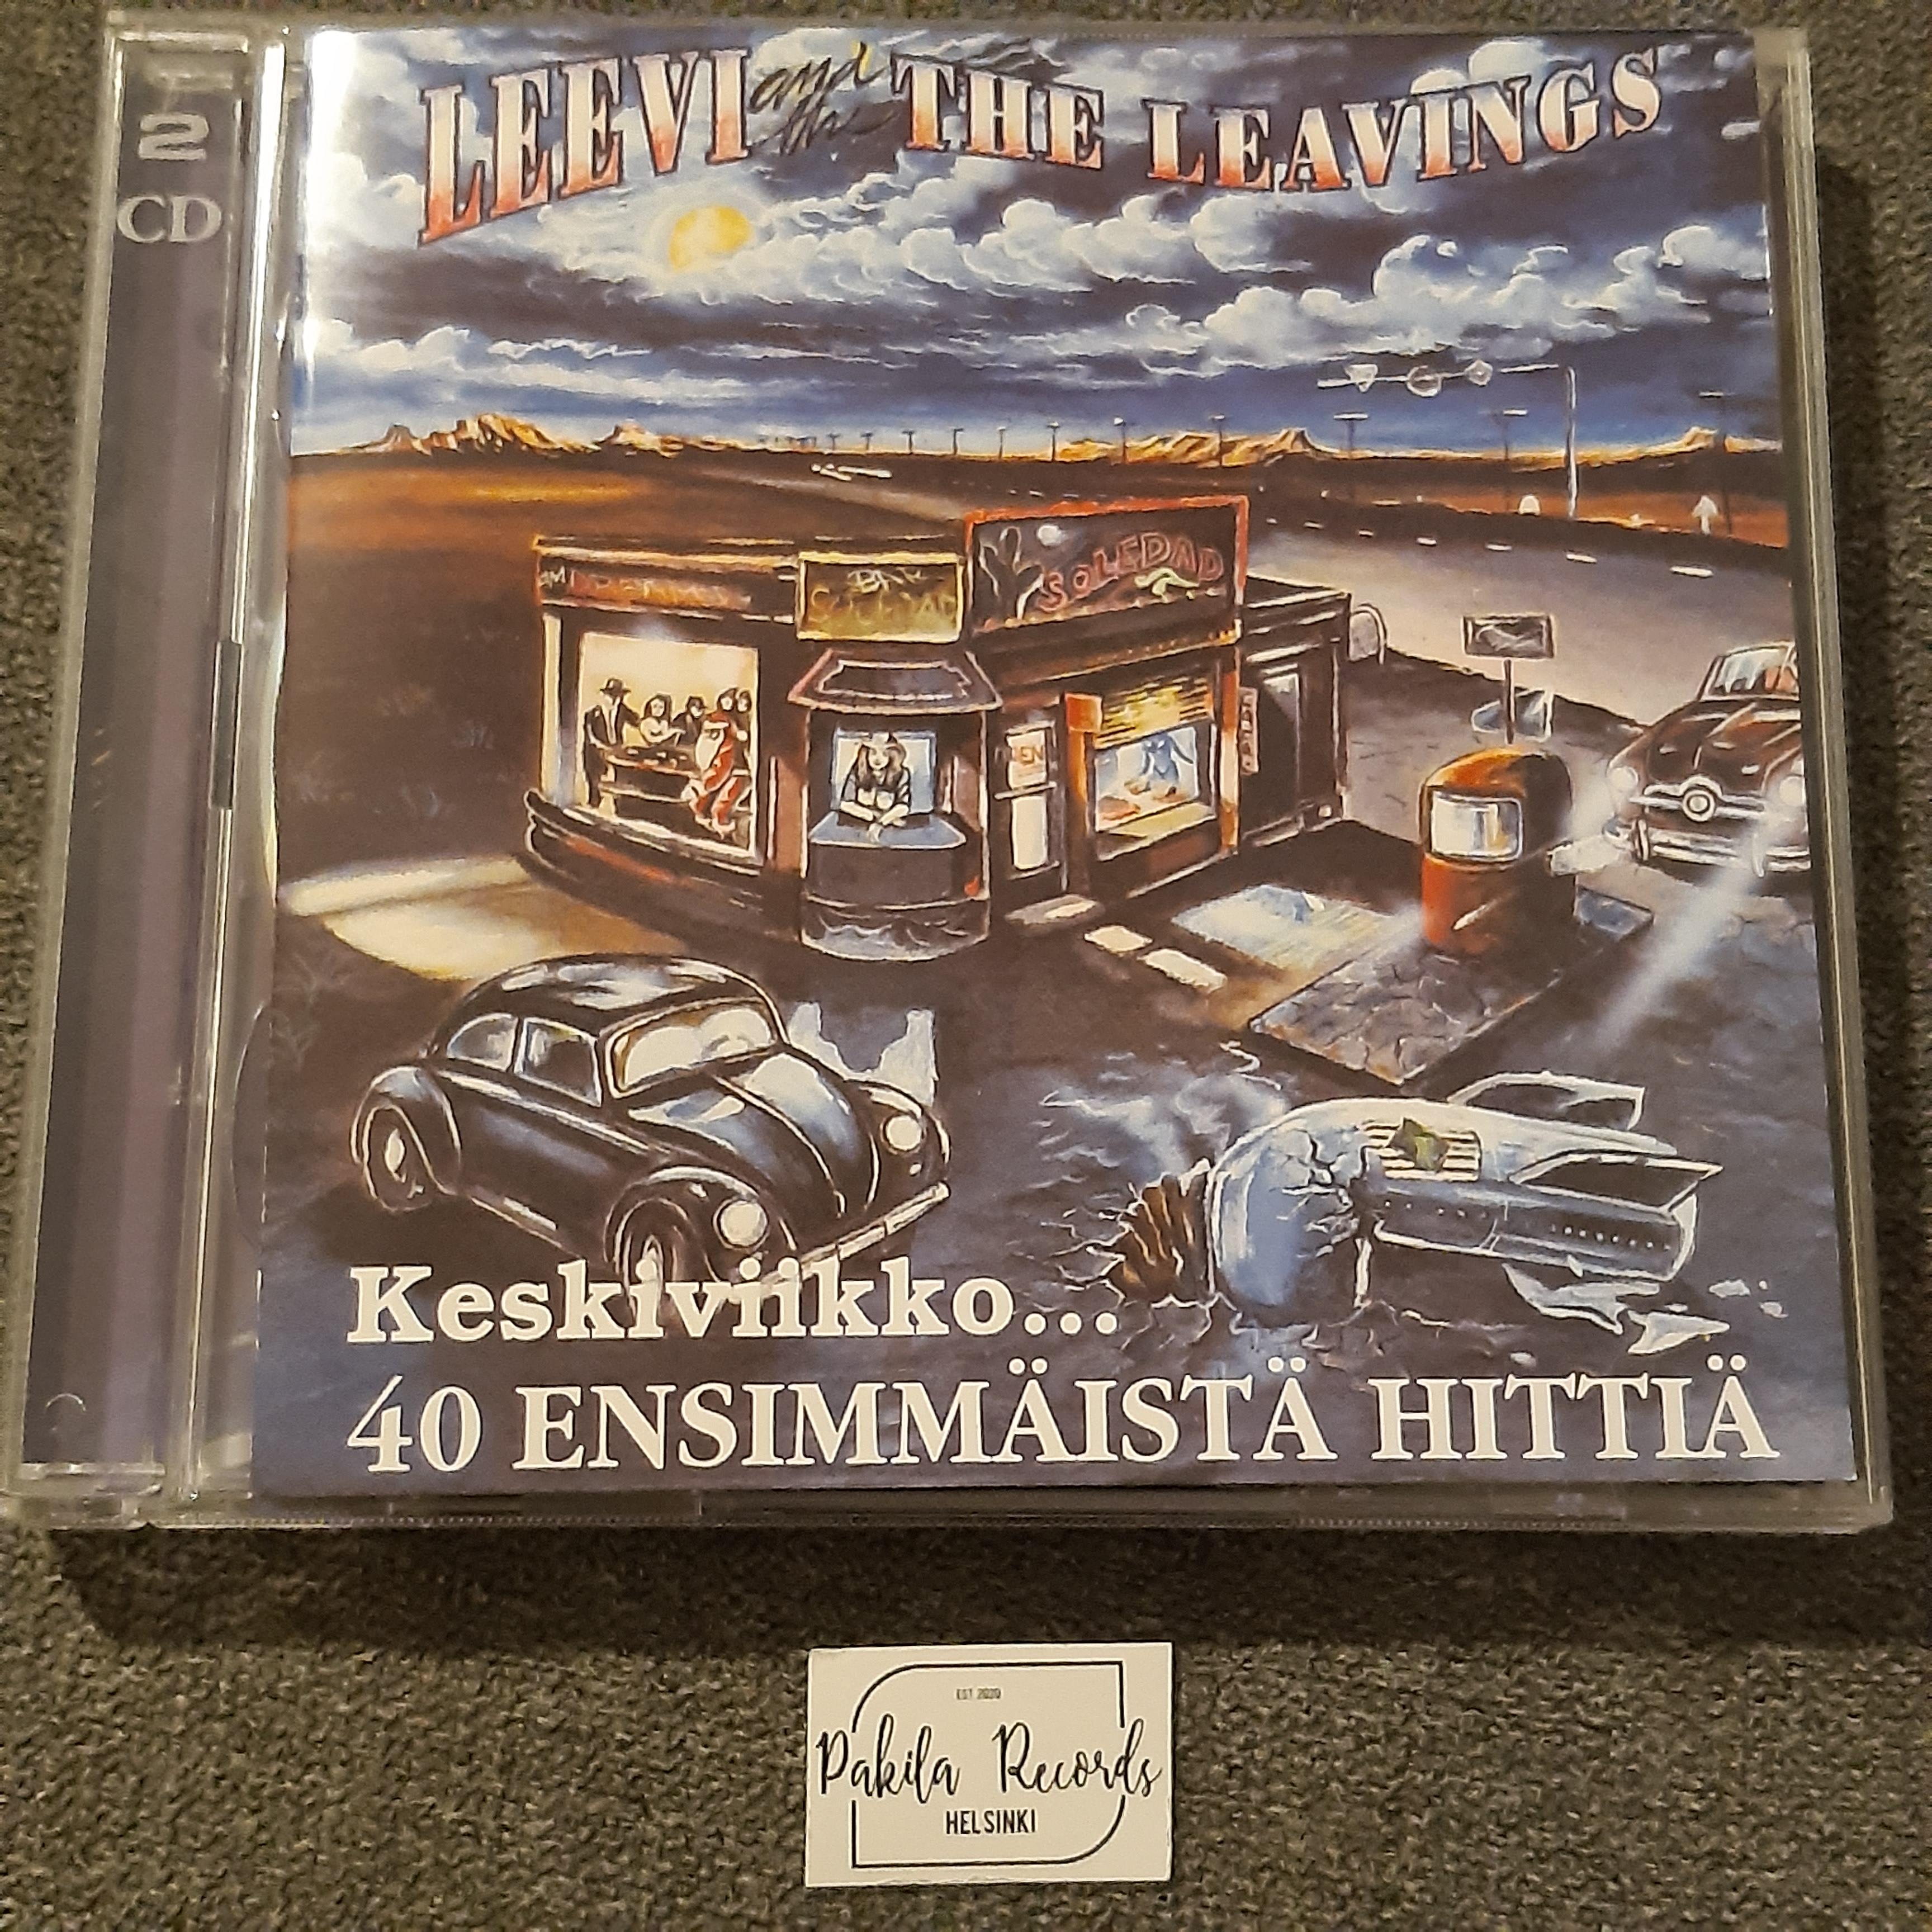 Leevi And The Leavings - Keskiviikko... 40 ensimmäistä hittiä - 2 CD (käytetty)